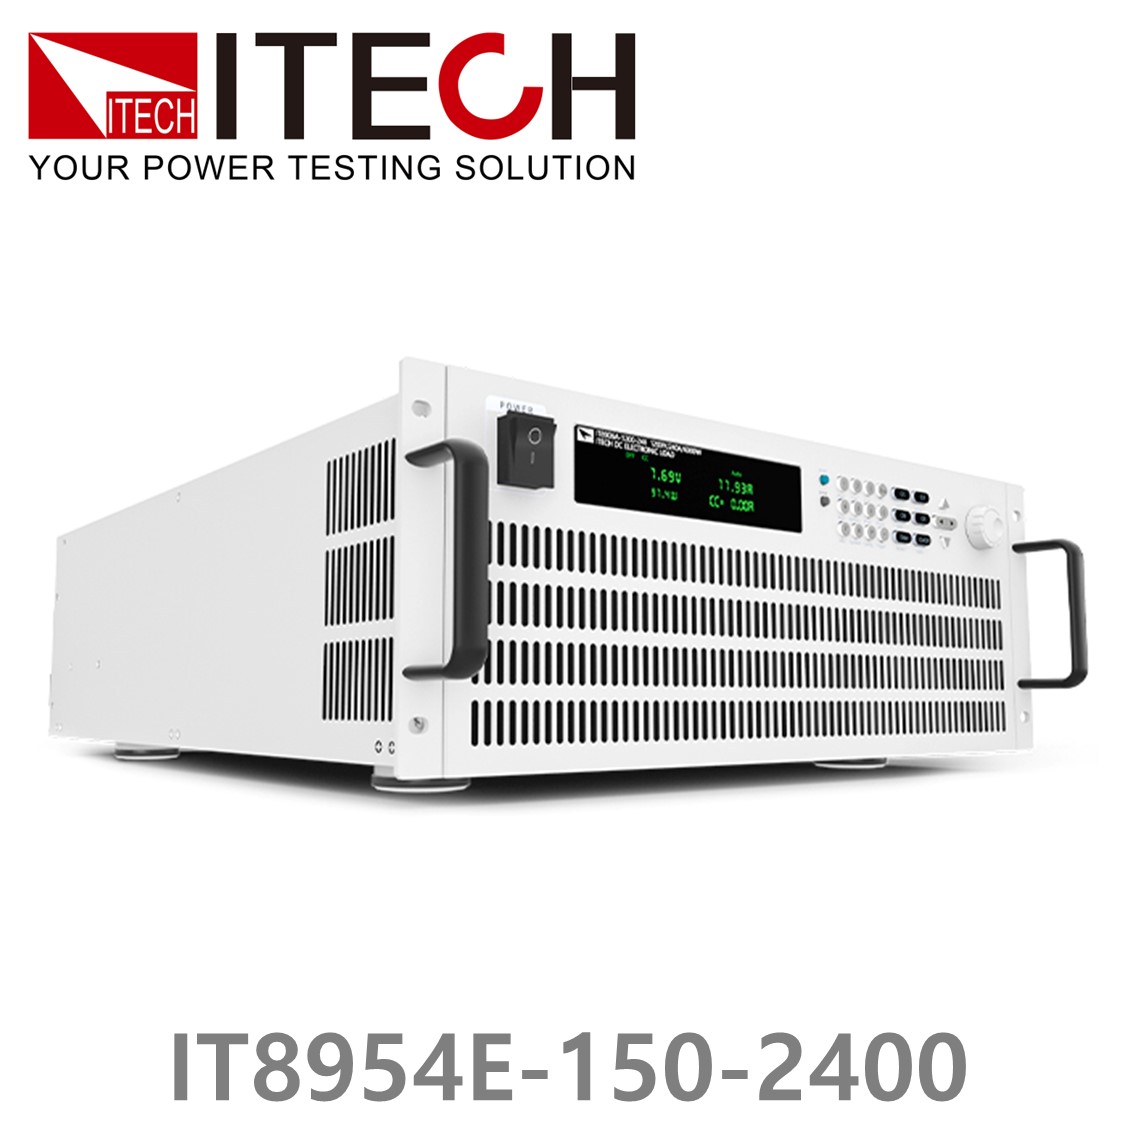 [ ITECH ] IT8954E-150-2400  고성능 고전력 DC 전자로드 150V/2400A/54kW (37U)